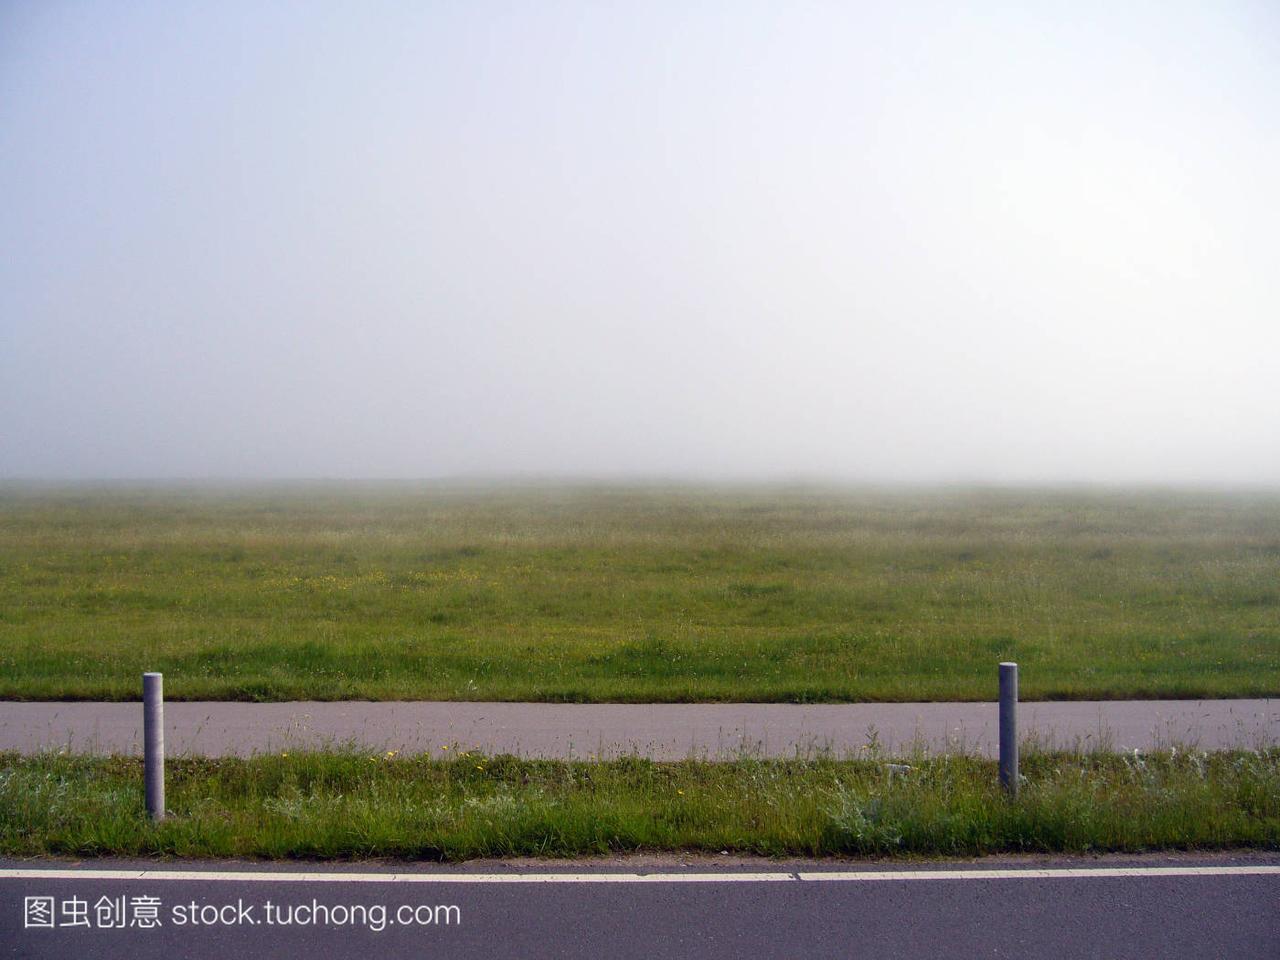 平线,horizon,雾,fog,穿越,across,沥青,asphalt,s